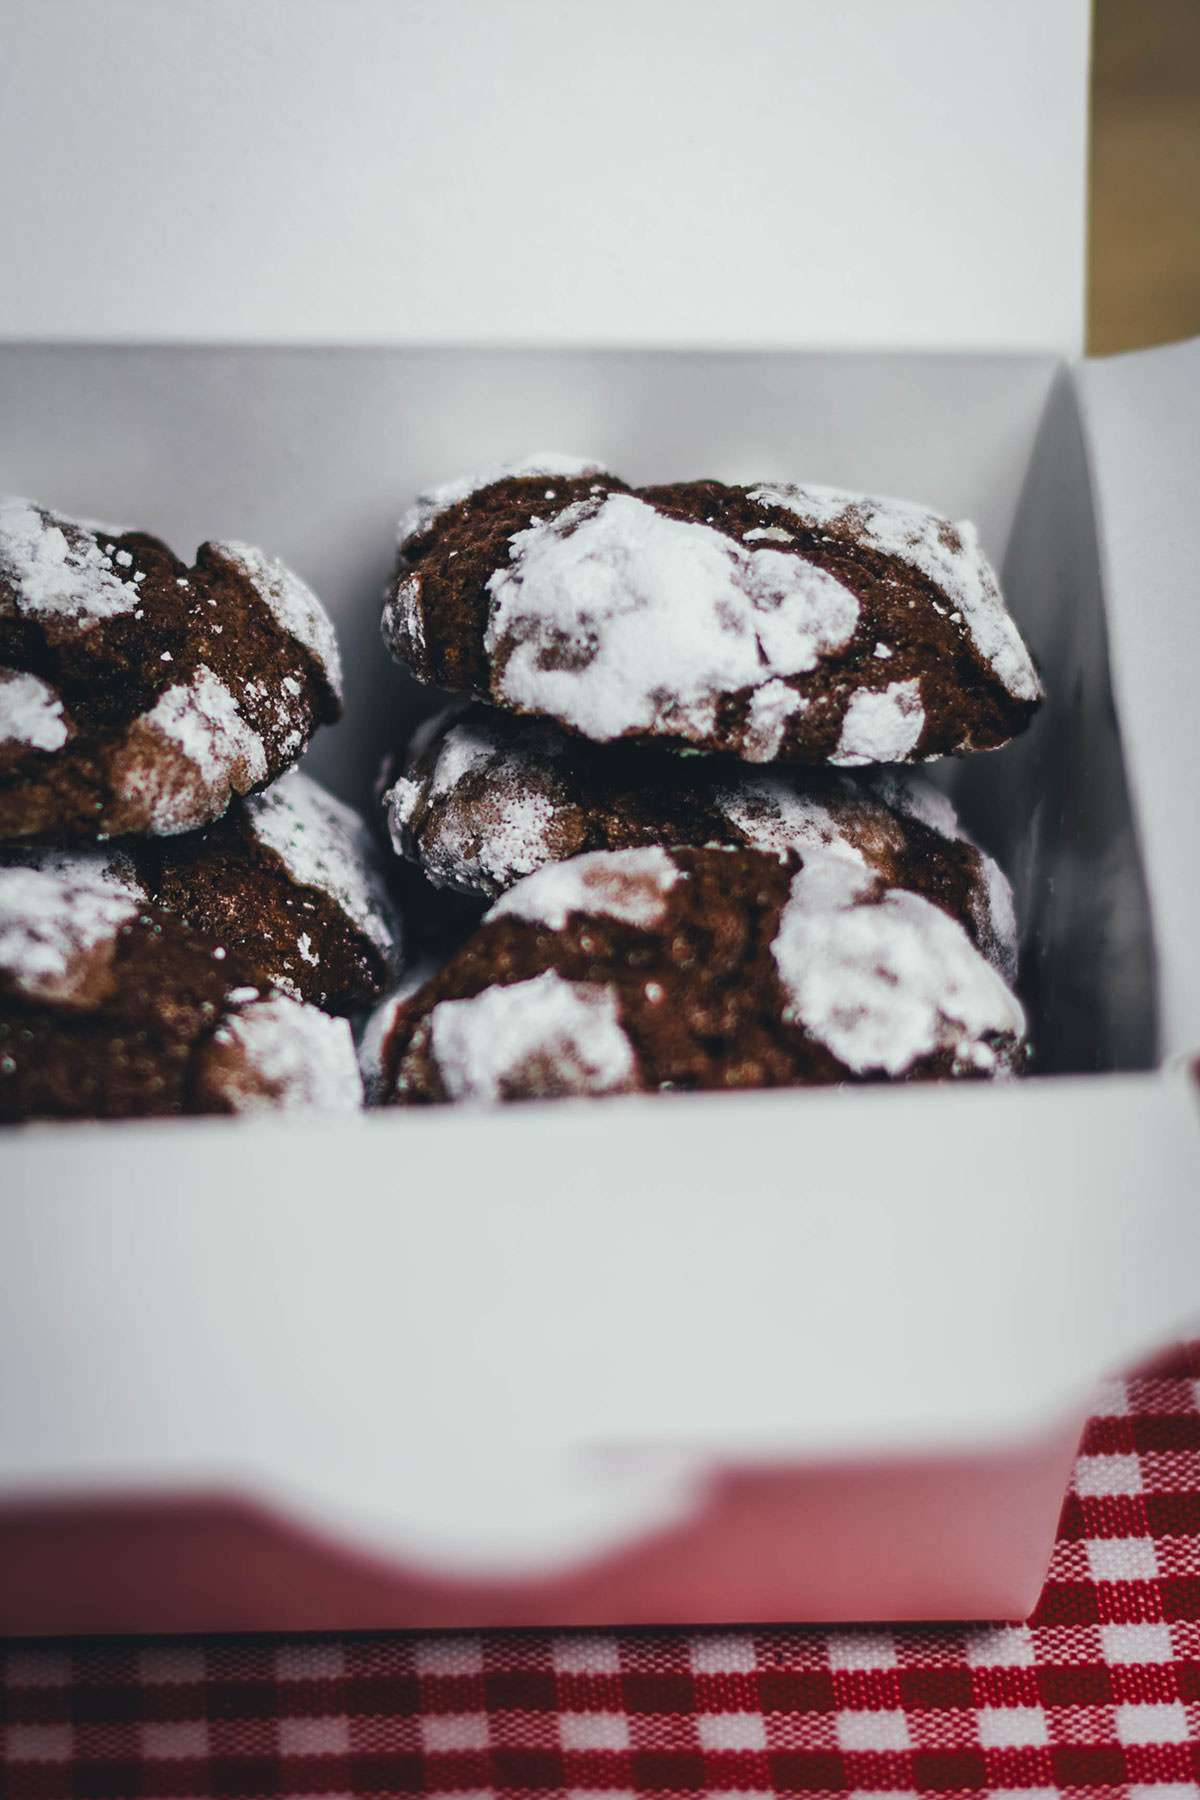 Schoko-Knusper-Kekse – Chocolate Crackle Cookies / Chocolate Crinkle ...